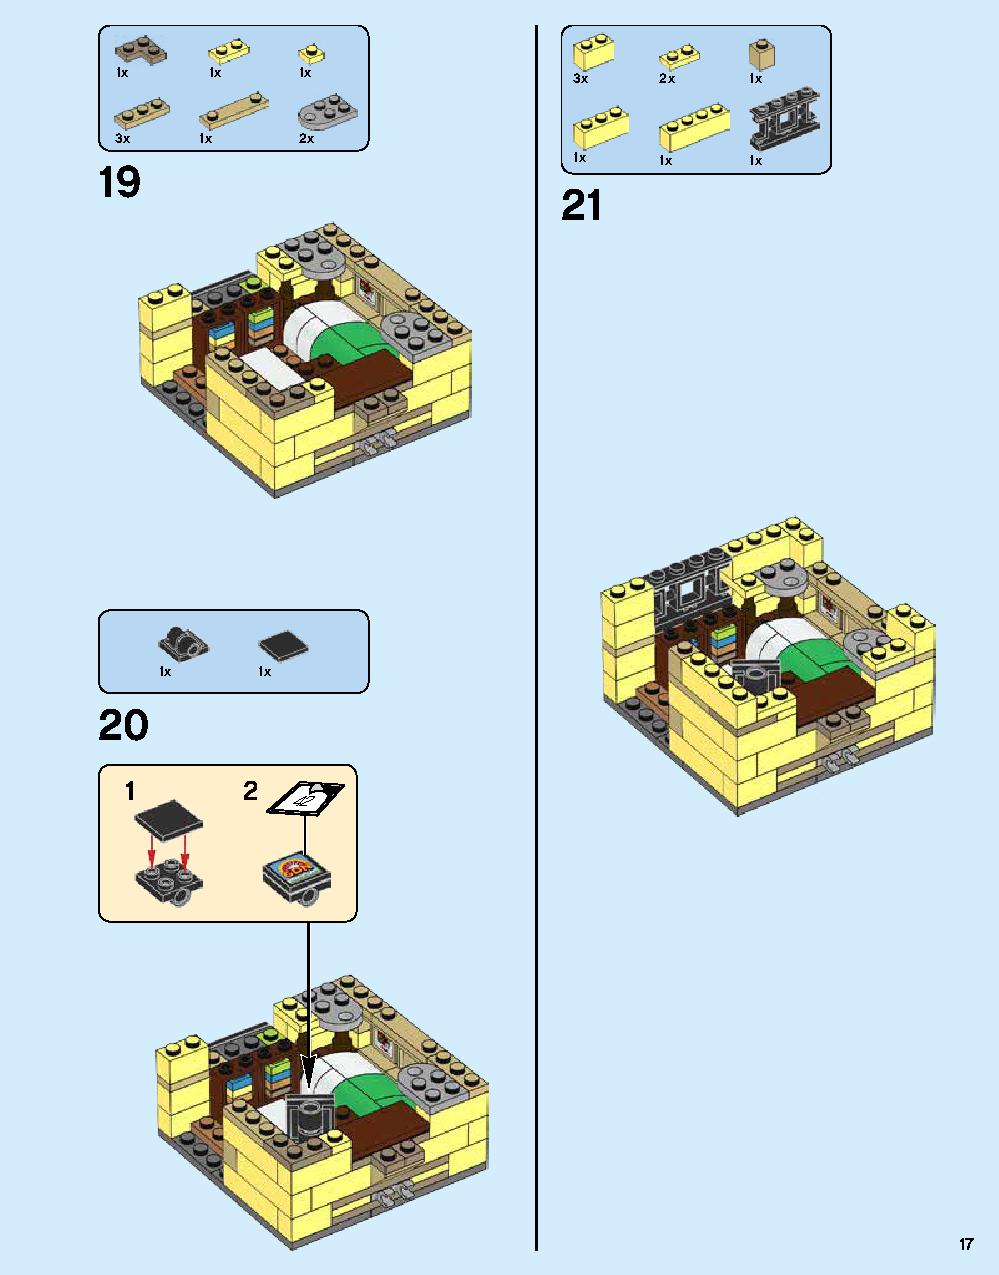 ニンジャゴー シティ 70620 レゴの商品情報 レゴの説明書・組立方法 17 page